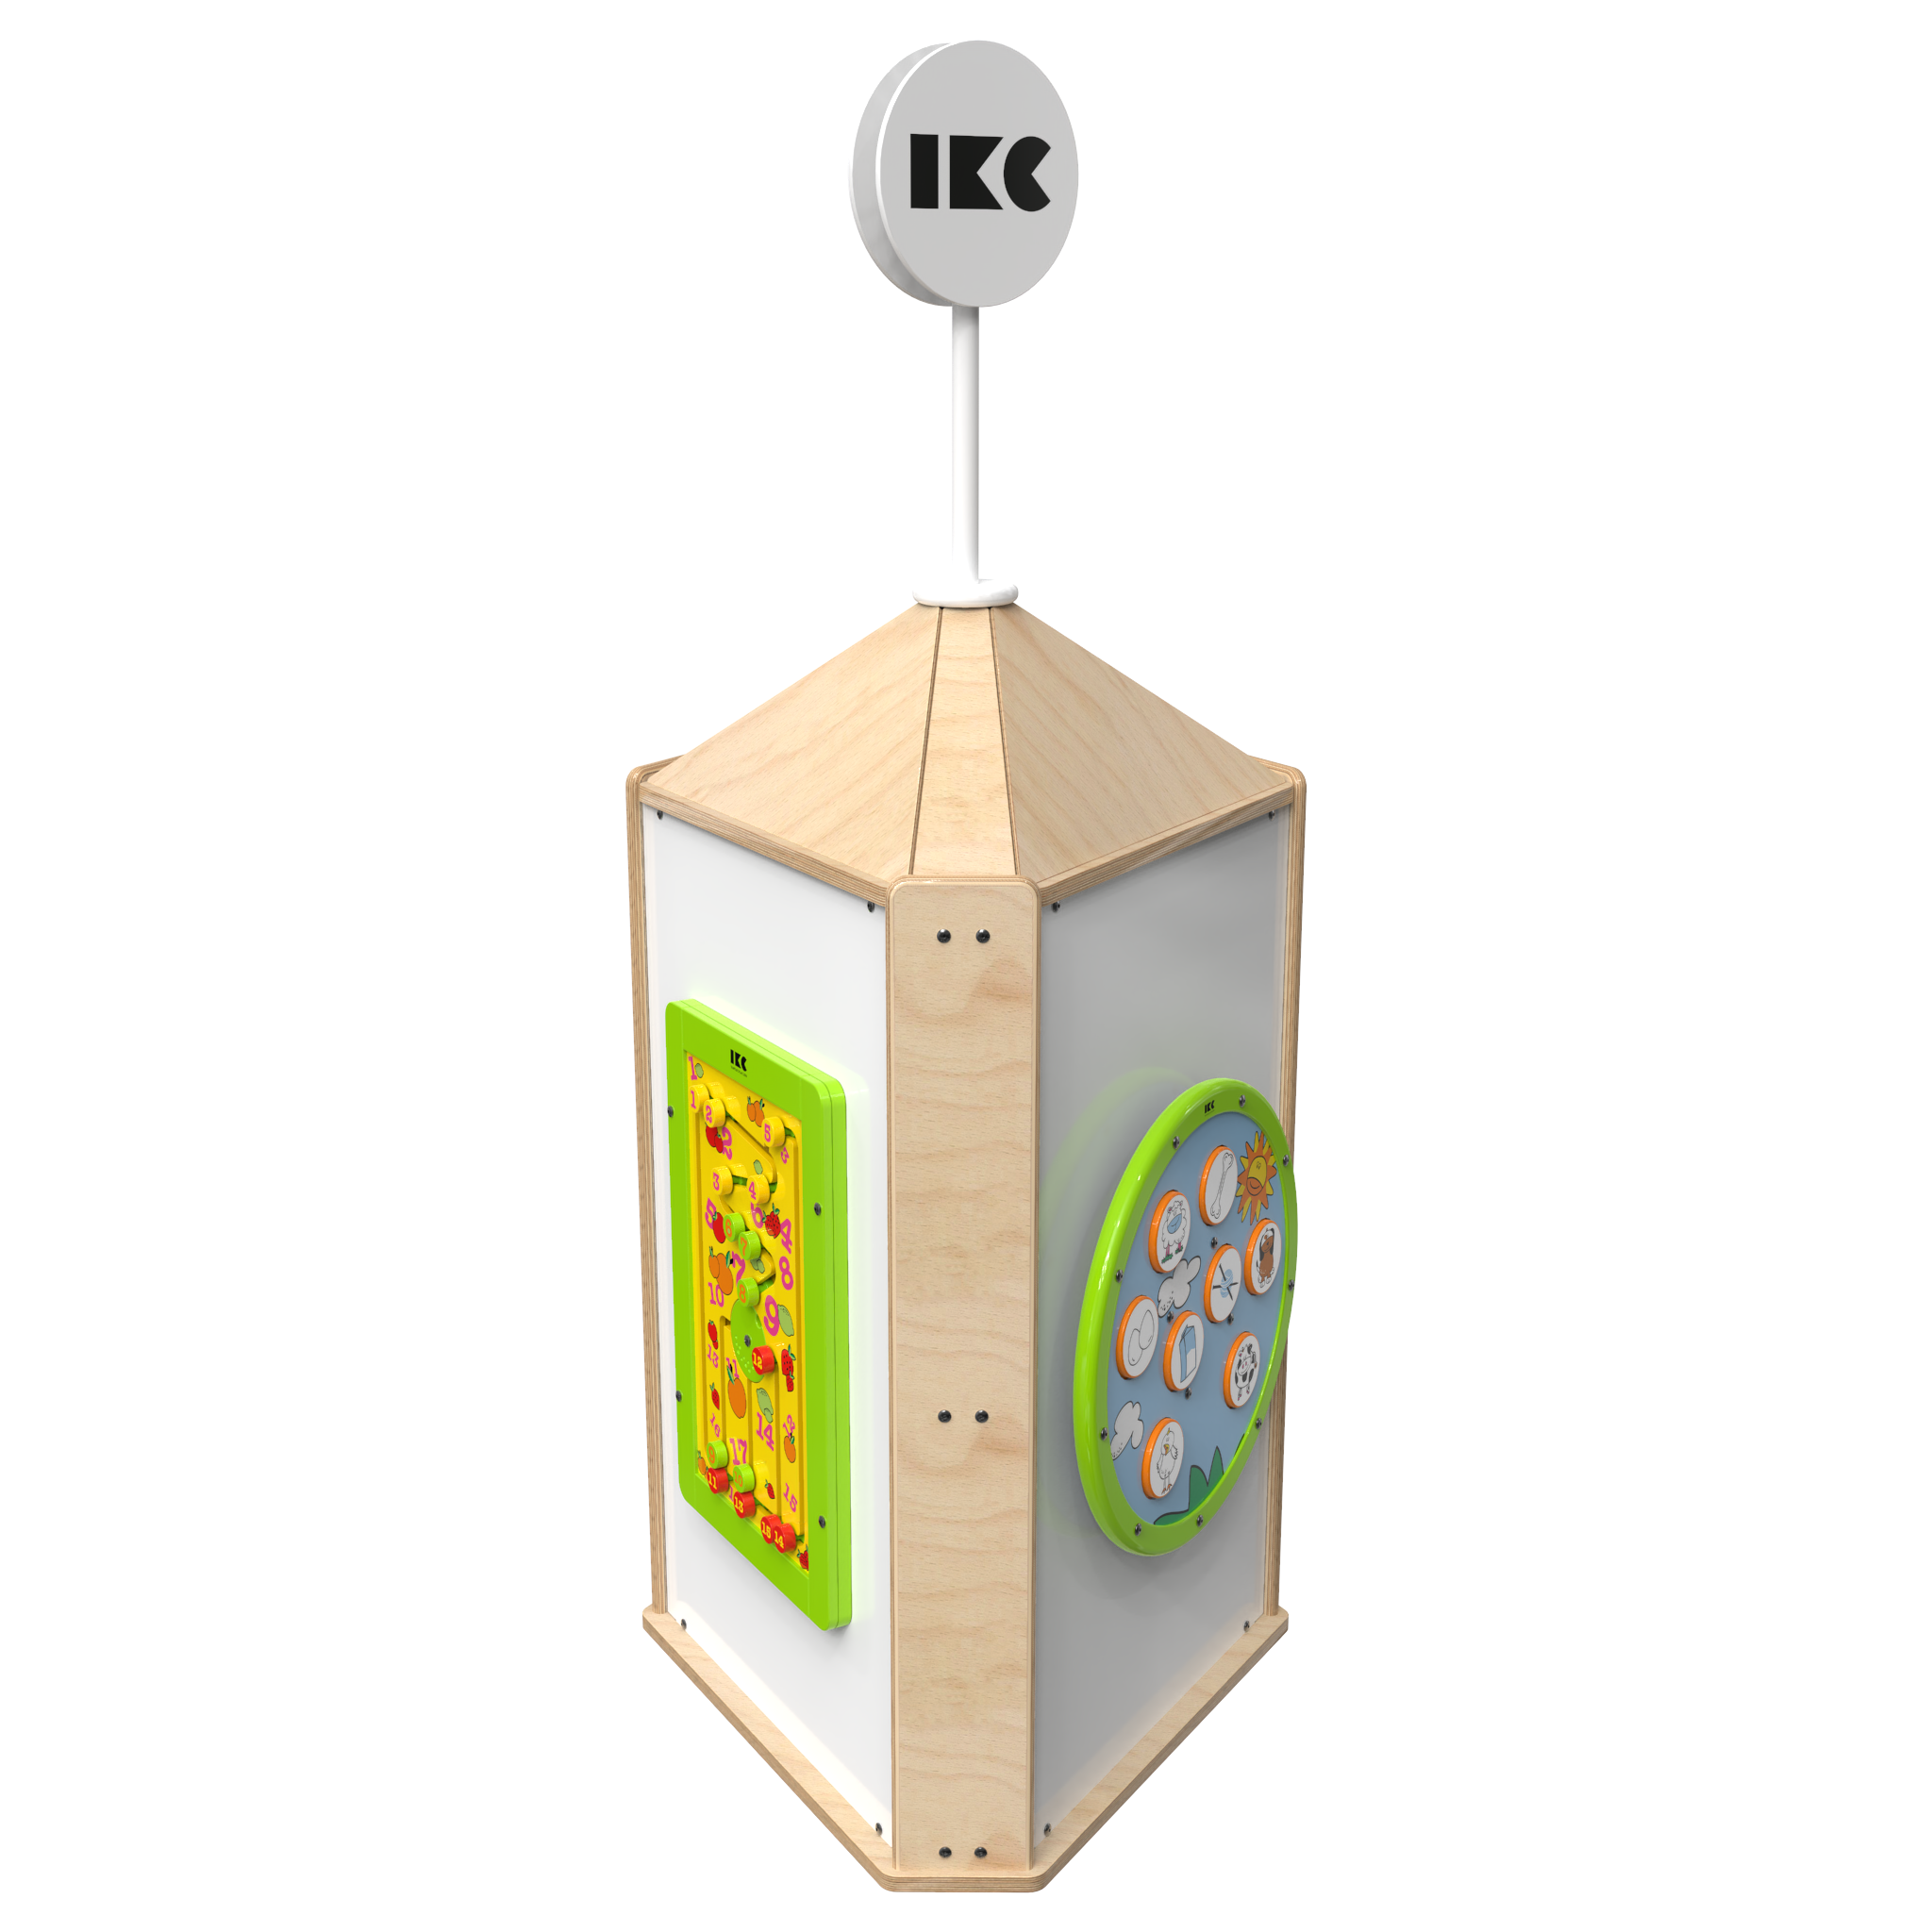 Dieses Bild zeigt eine interaktive Spielsysteme Playtower touch wood